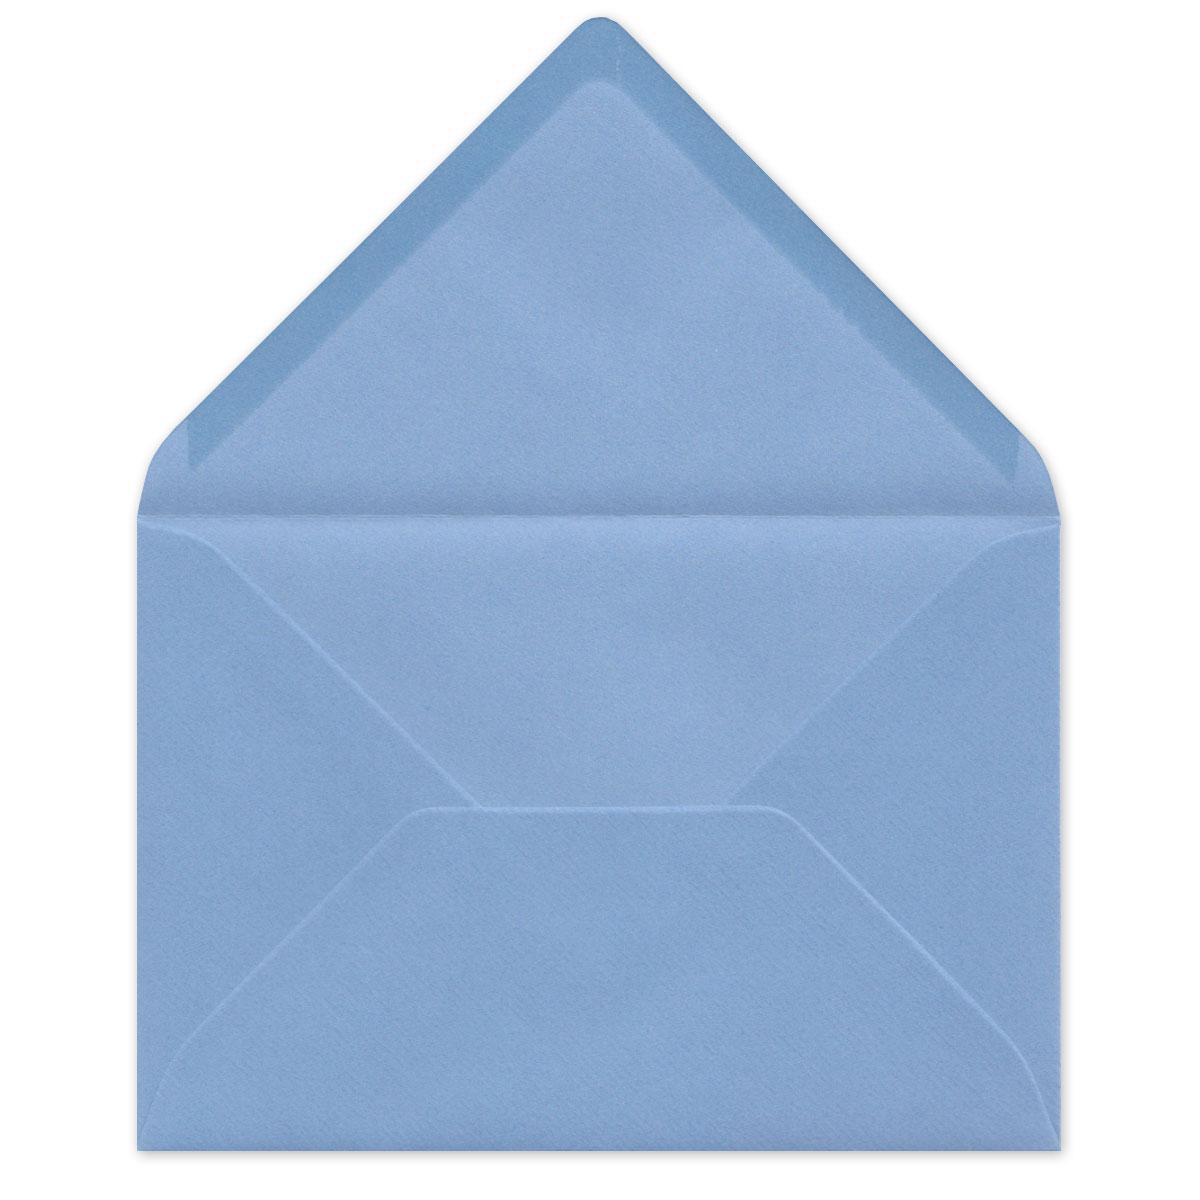 10 Grußkarten mit blauen Kuverts: Hase